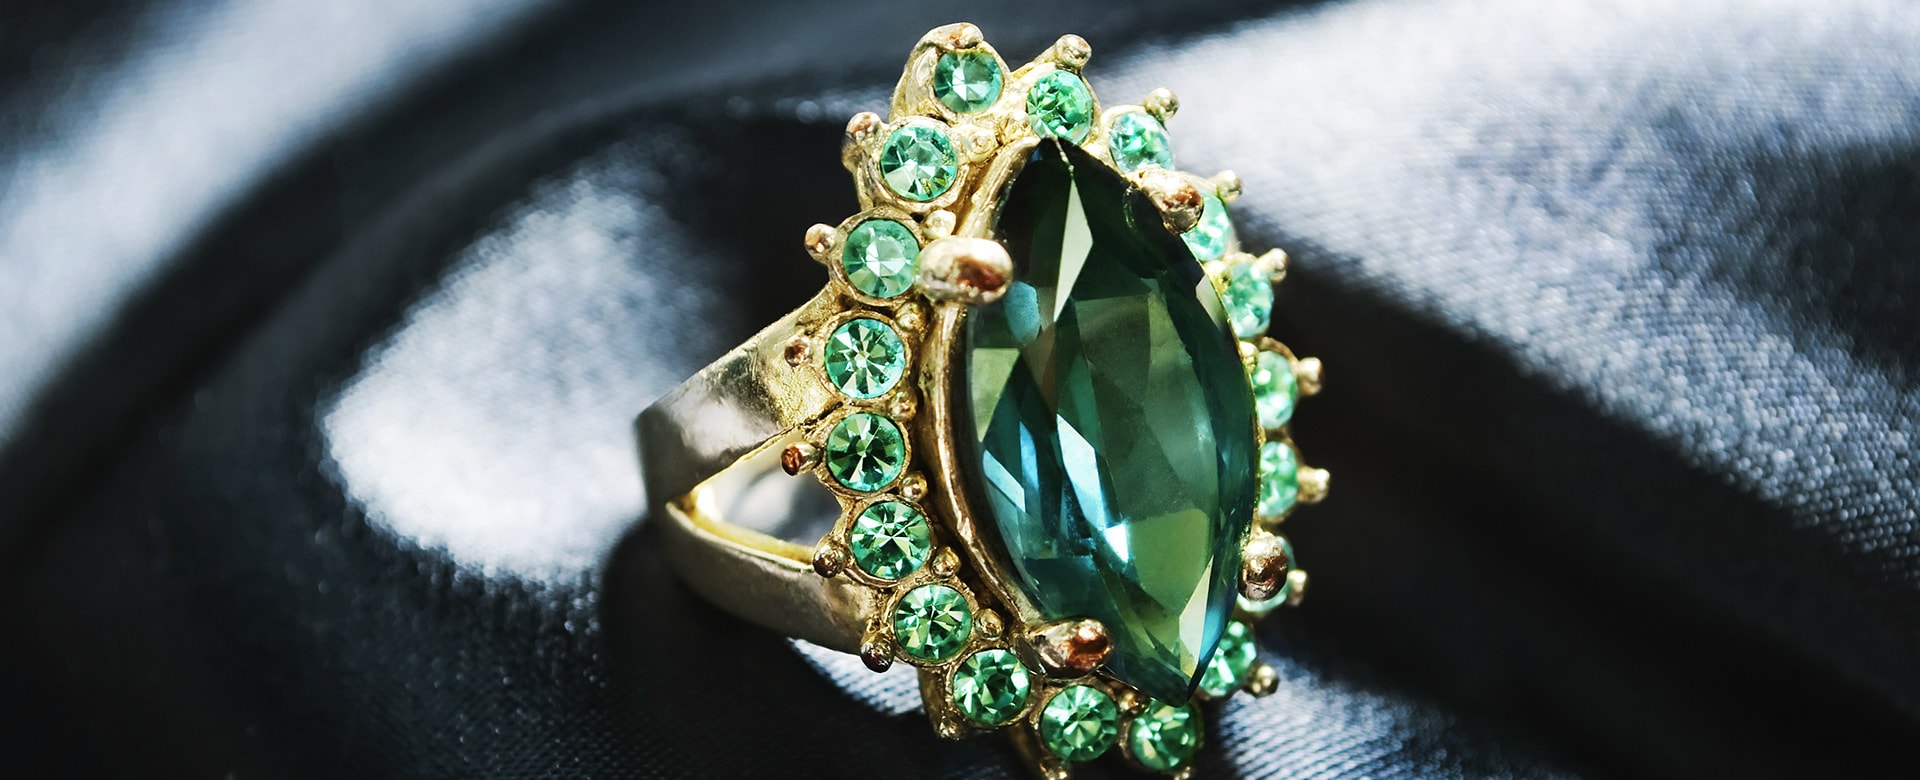 Discernment on Green Gemstones 1